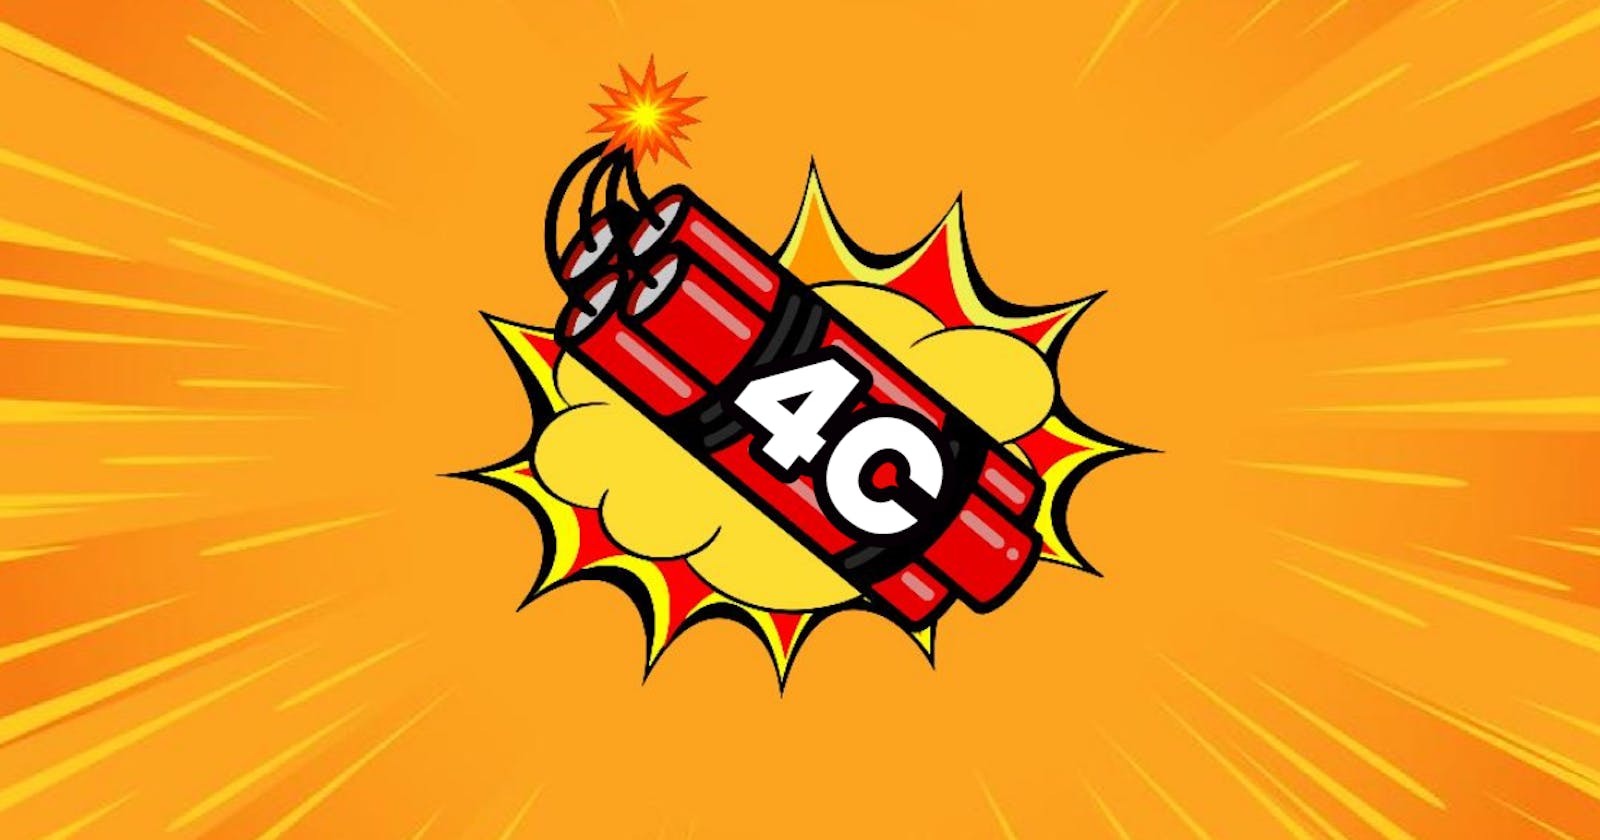 4C -  A Cool Community for Content Creators